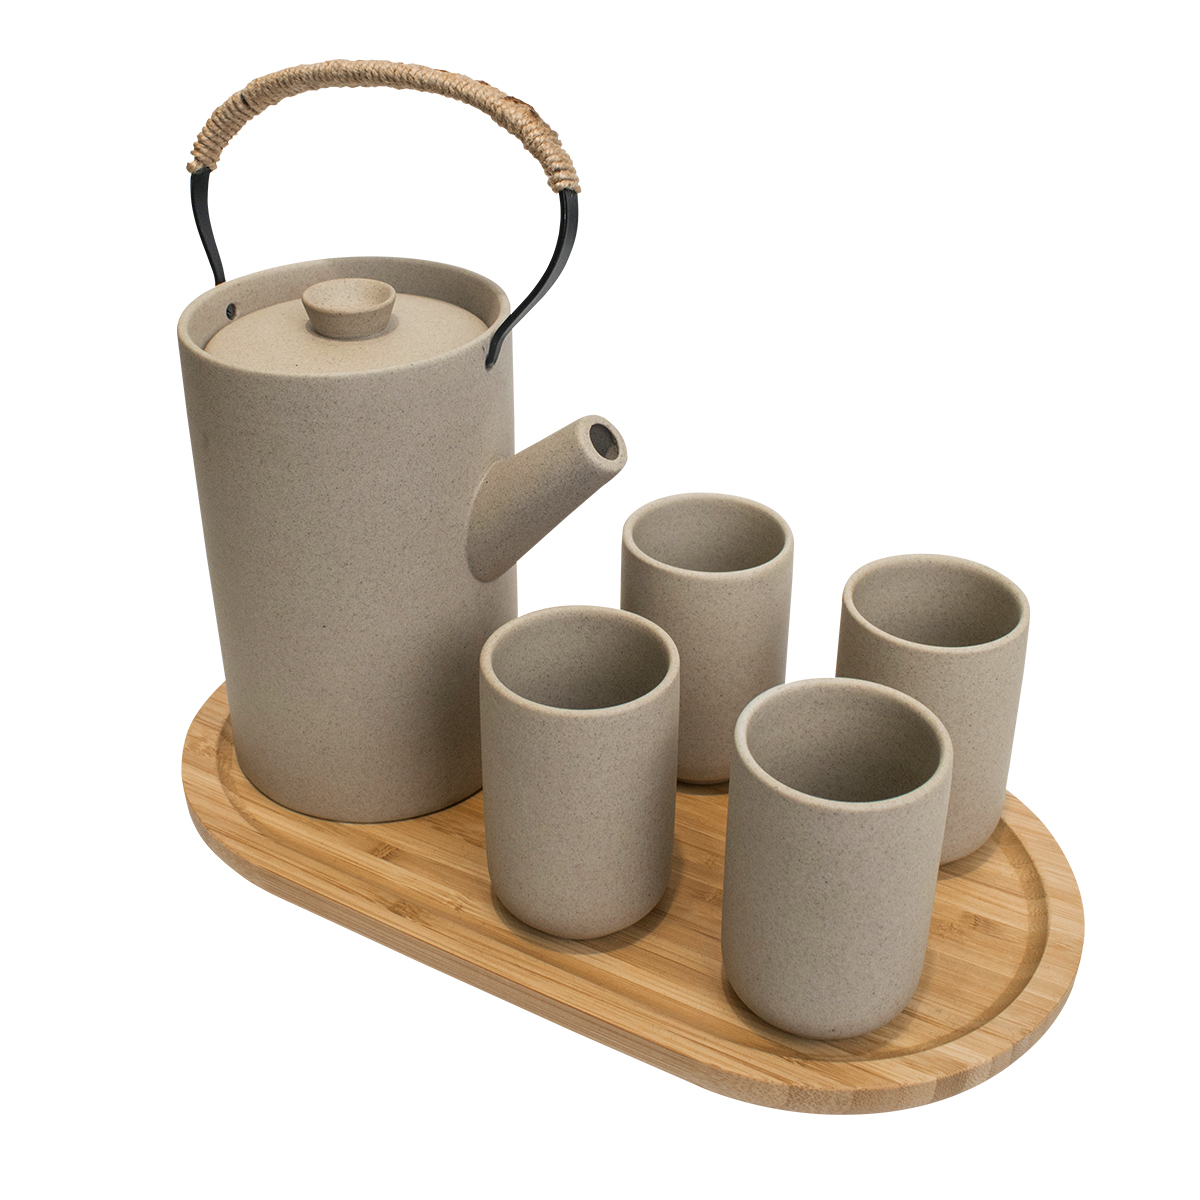 фото Чайный набор, чайник, 4 стакана на бамбуковой подставке, цвет серый, marma mm-set-06